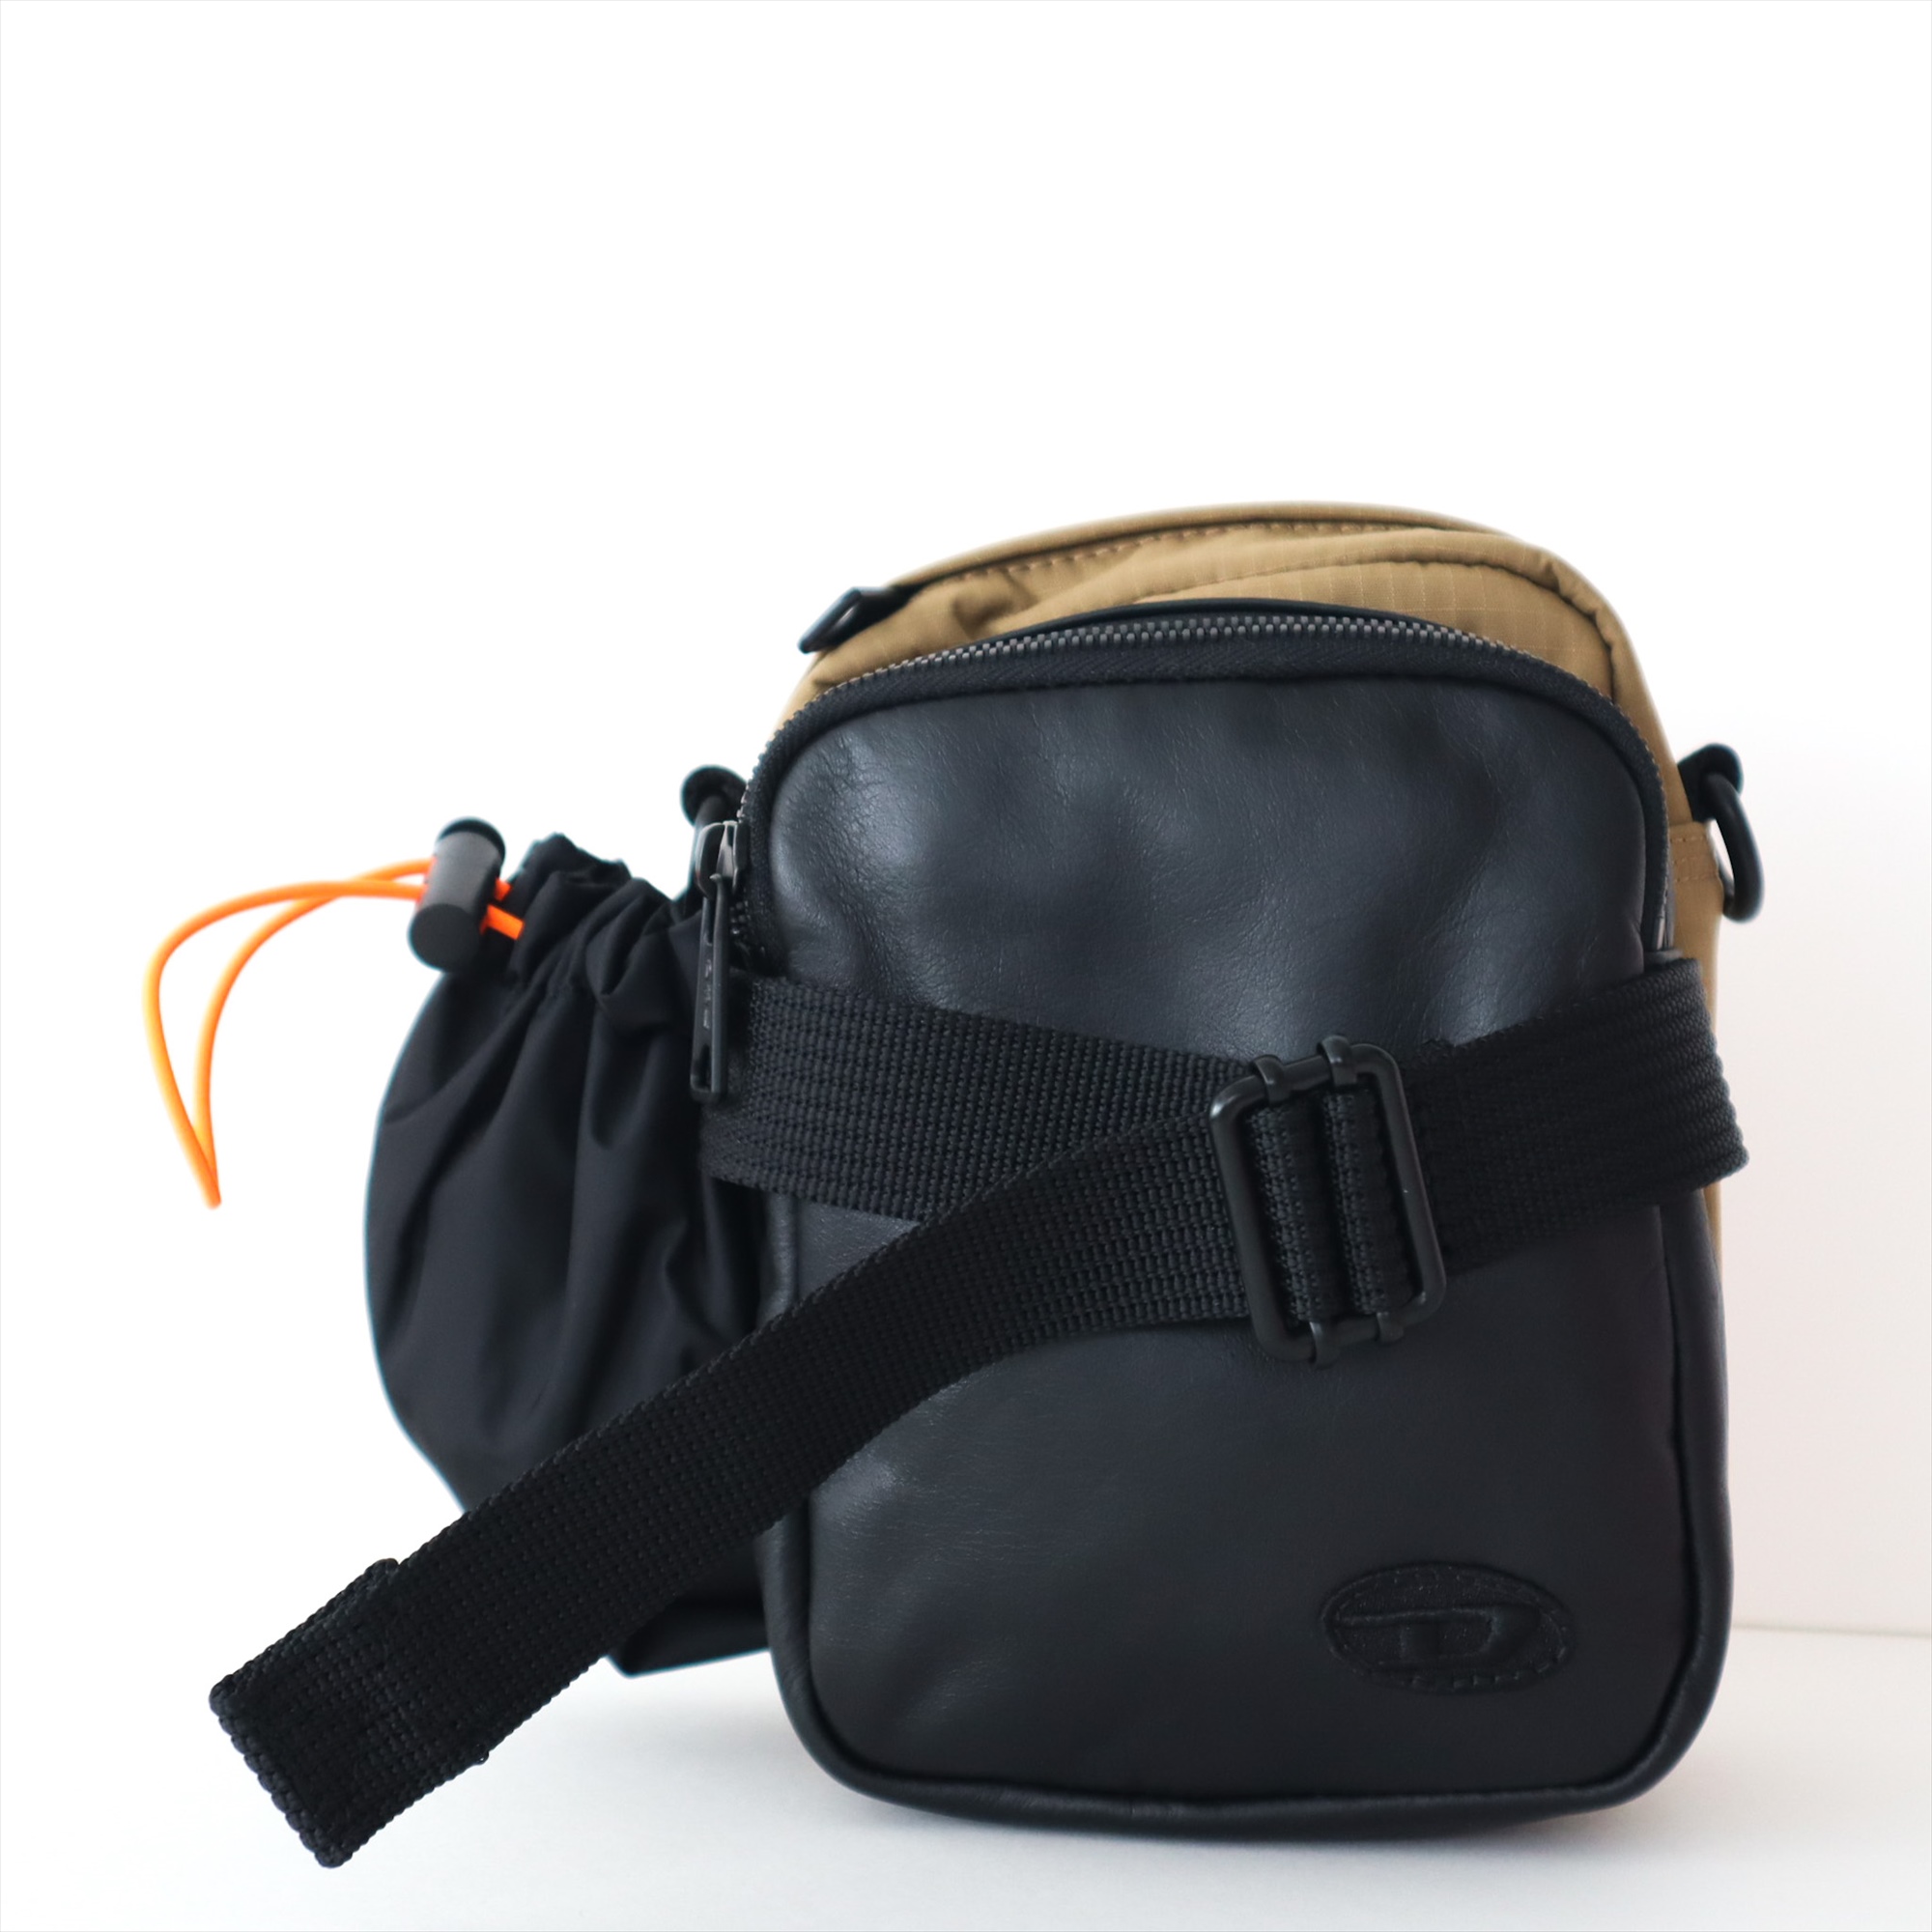 ディーゼル ボディバッグ ショルダーバッグ ウエストバッグ カードポケット付き メンズ ブラック ブラウン 黒 本革+ナイロン DIESEL  X08932 P4638